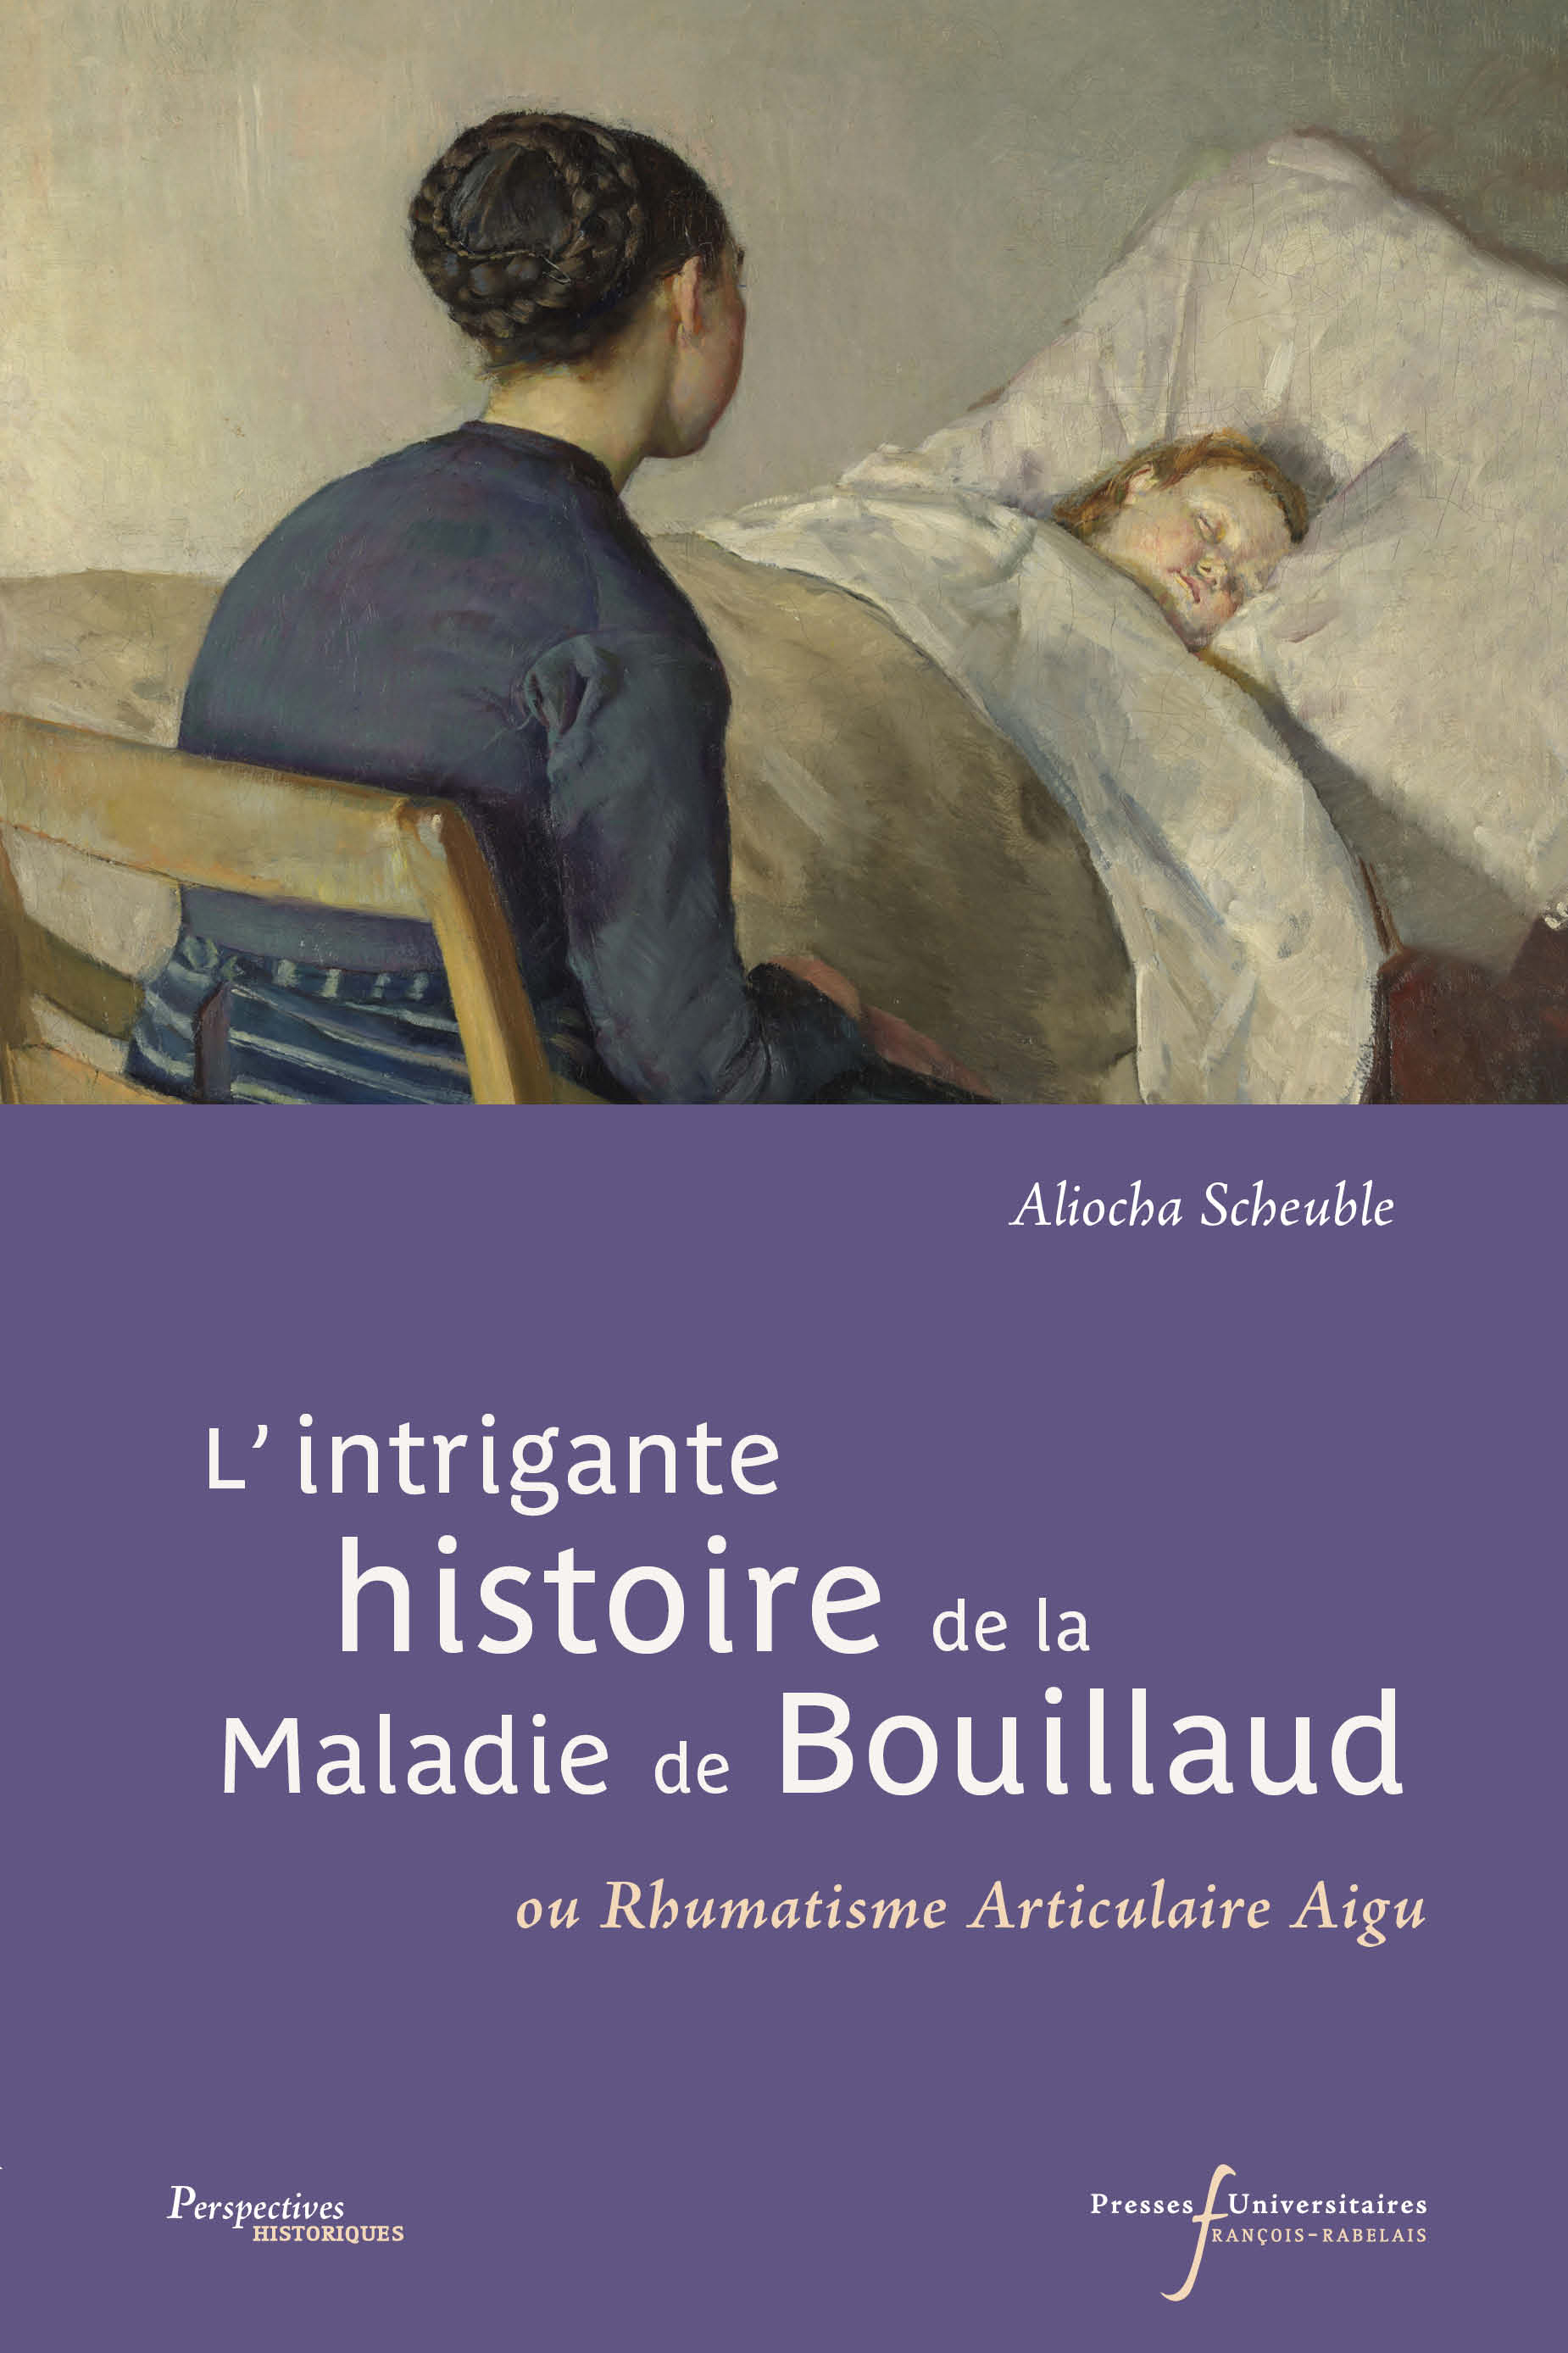 L’intrigante histoire de la maladie de Bouillaud